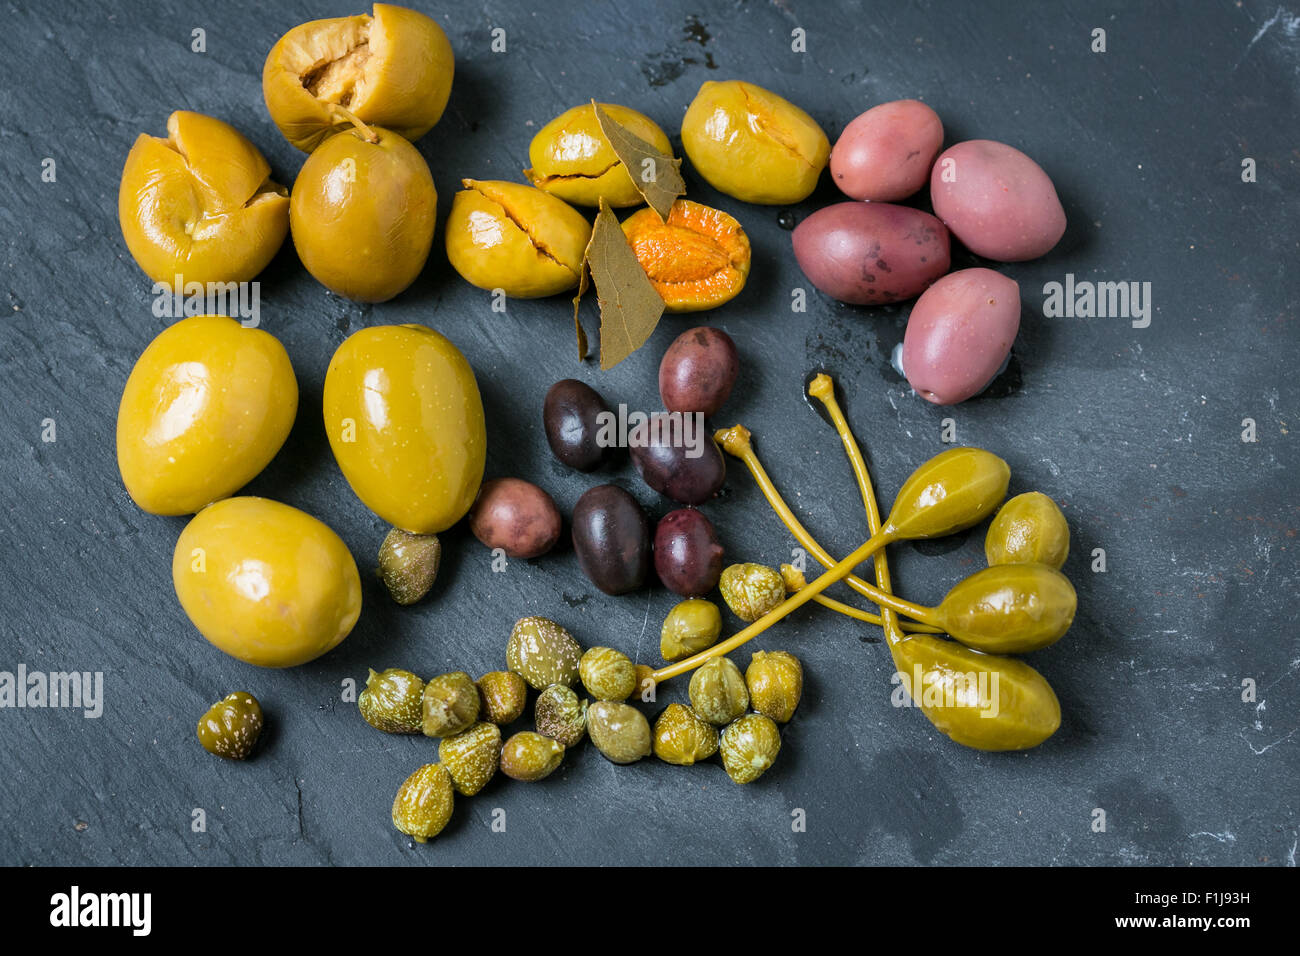 Mixed olives on grey background Stock Photo